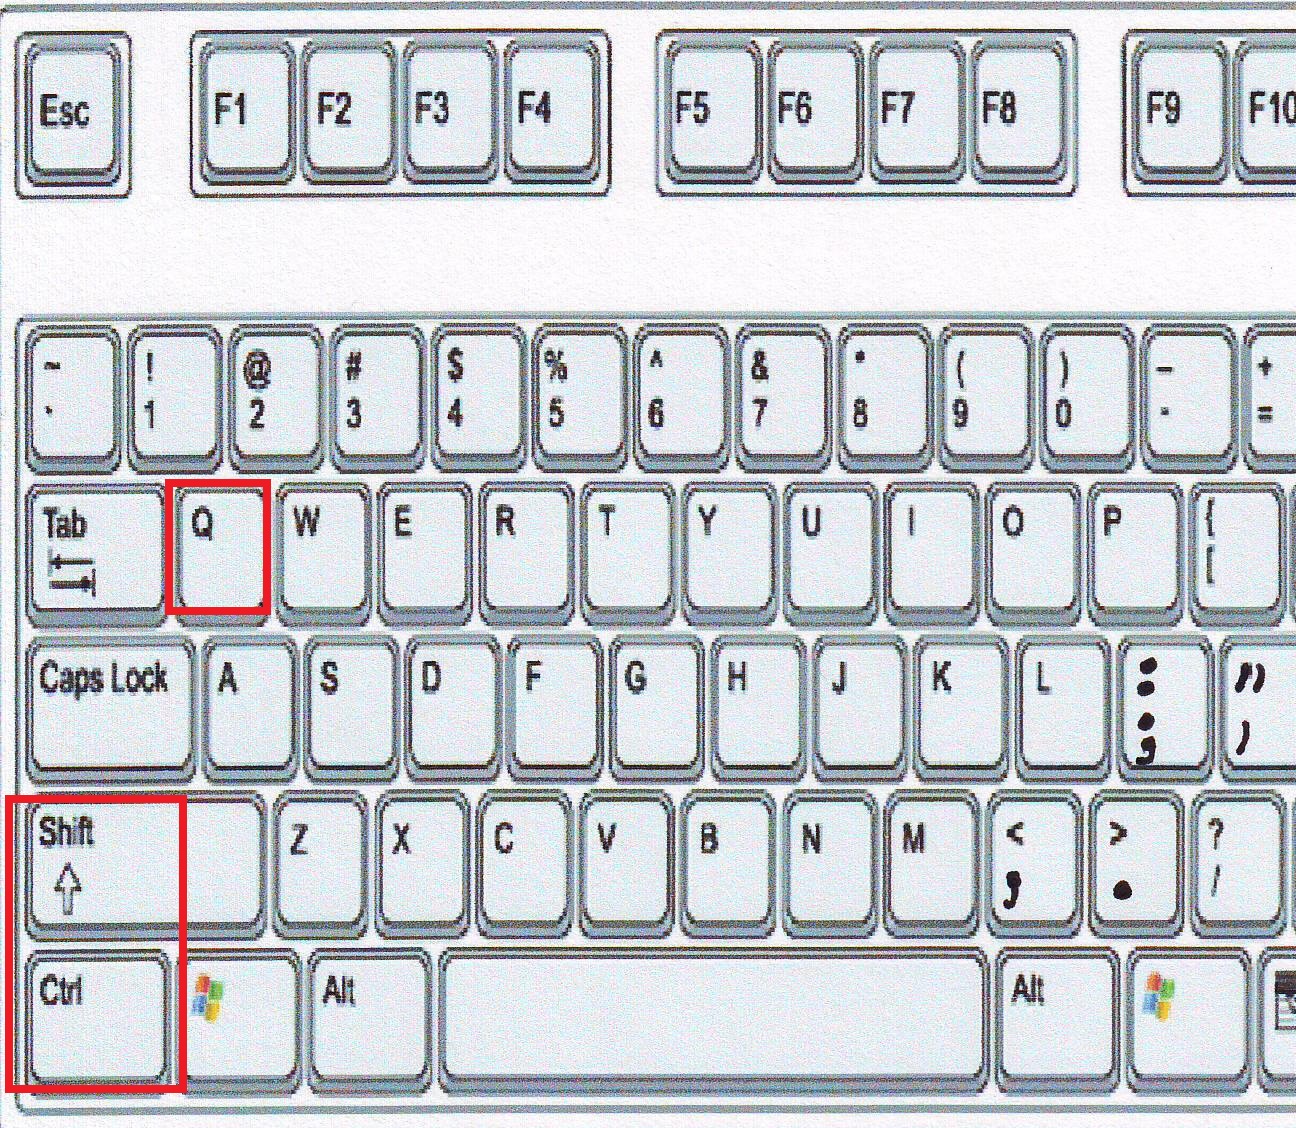 Command на клавиатуре. Кнопка Command на клавиатуре. Клавиша Command на клавиатуре Windows. Option на клавиатуре Windows. Win Tab на клавиатуре.